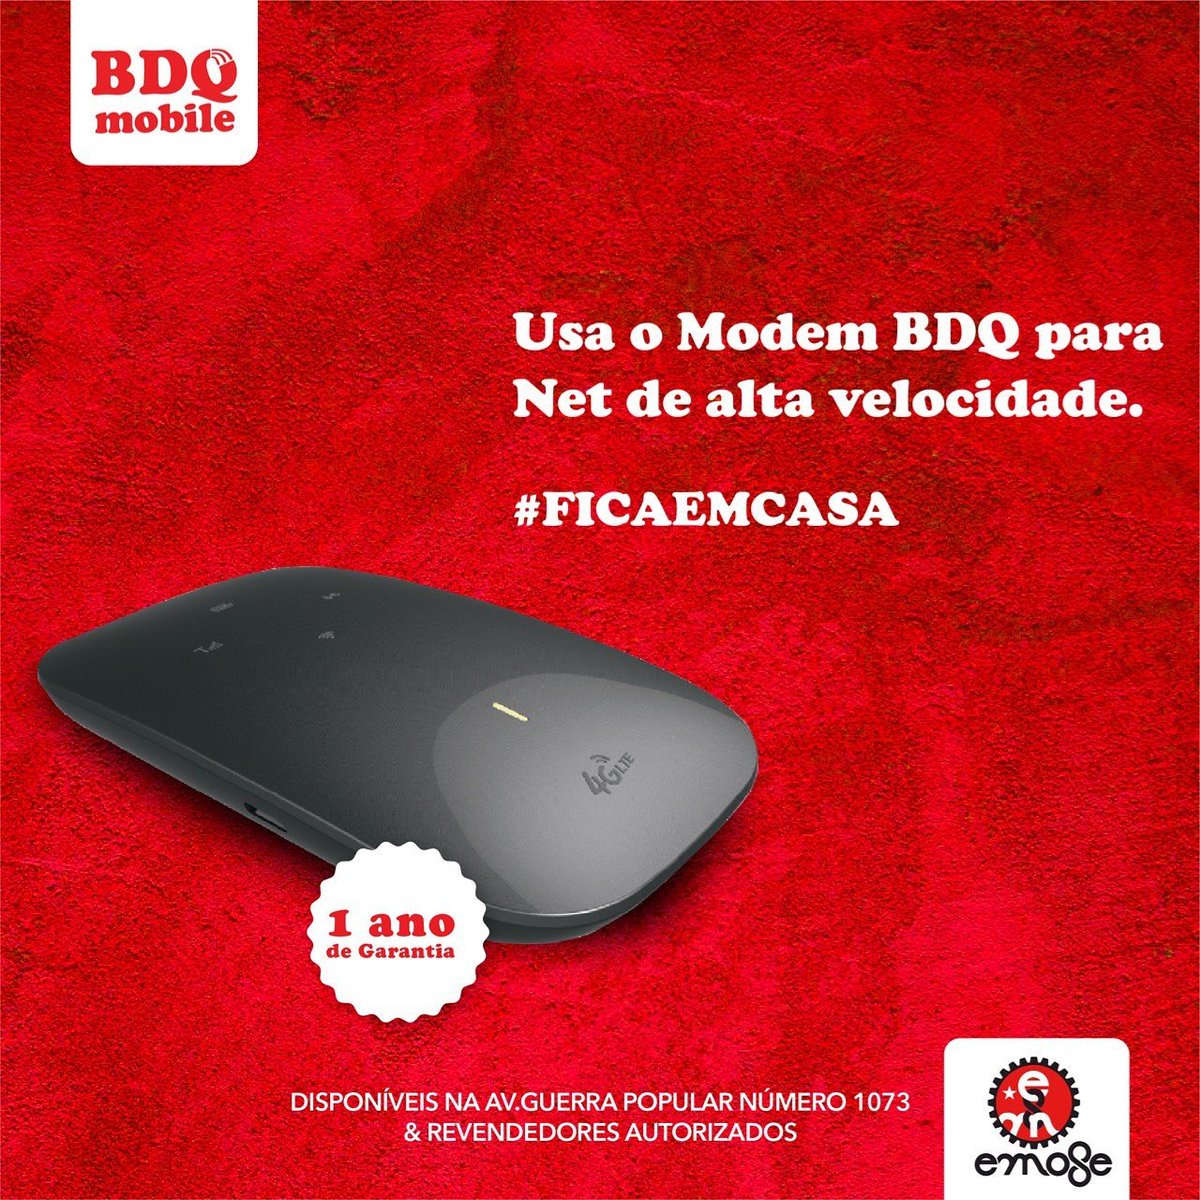 BDQ Mobile - Habilite-se a ganhar uma Bombinha Plus. Para